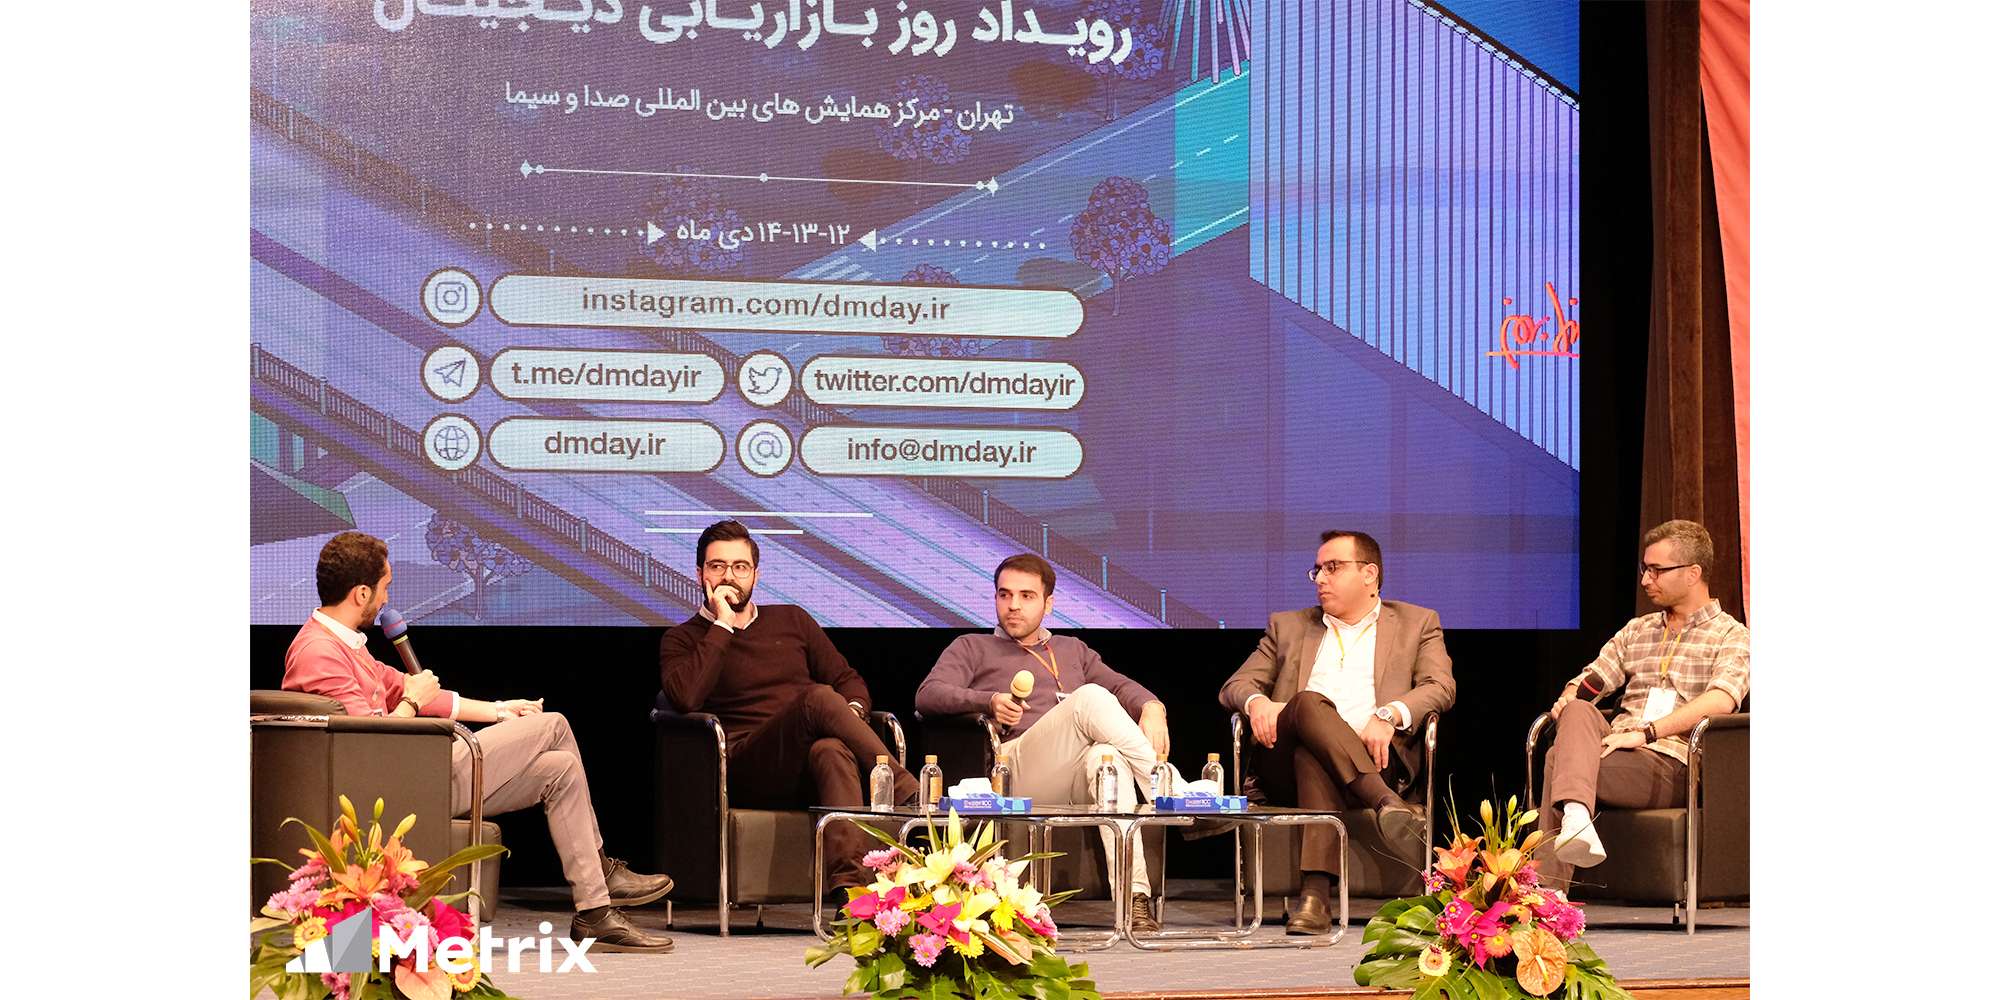 پنل اتریبیوشن با حضور دو نماینده از ترکرهای ایرانی و دو نماینده از اپ های بزرگ برگزار شد